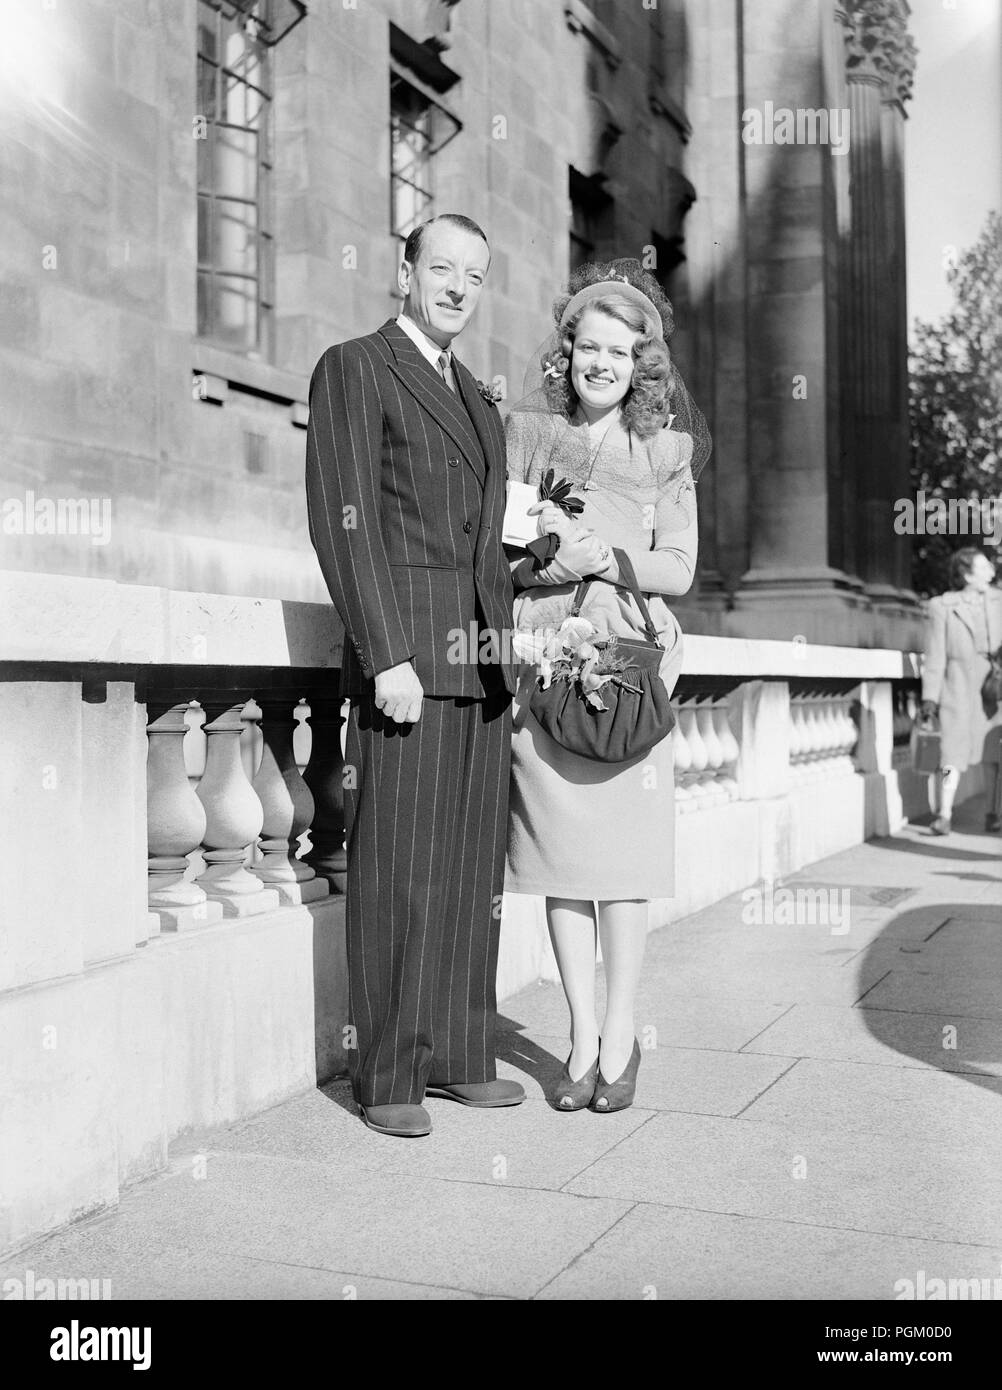 11e Septembre 1946. Le mariage de M. George Burnside, un directeur d'Erwin Trogneux, les agents de publicité, et Mlle Signe Nyman, un résident suédois de 25 ans, vivant à Londres. Le mariage a lieu à St Marylebone Register Office, à Londres. Banque D'Images